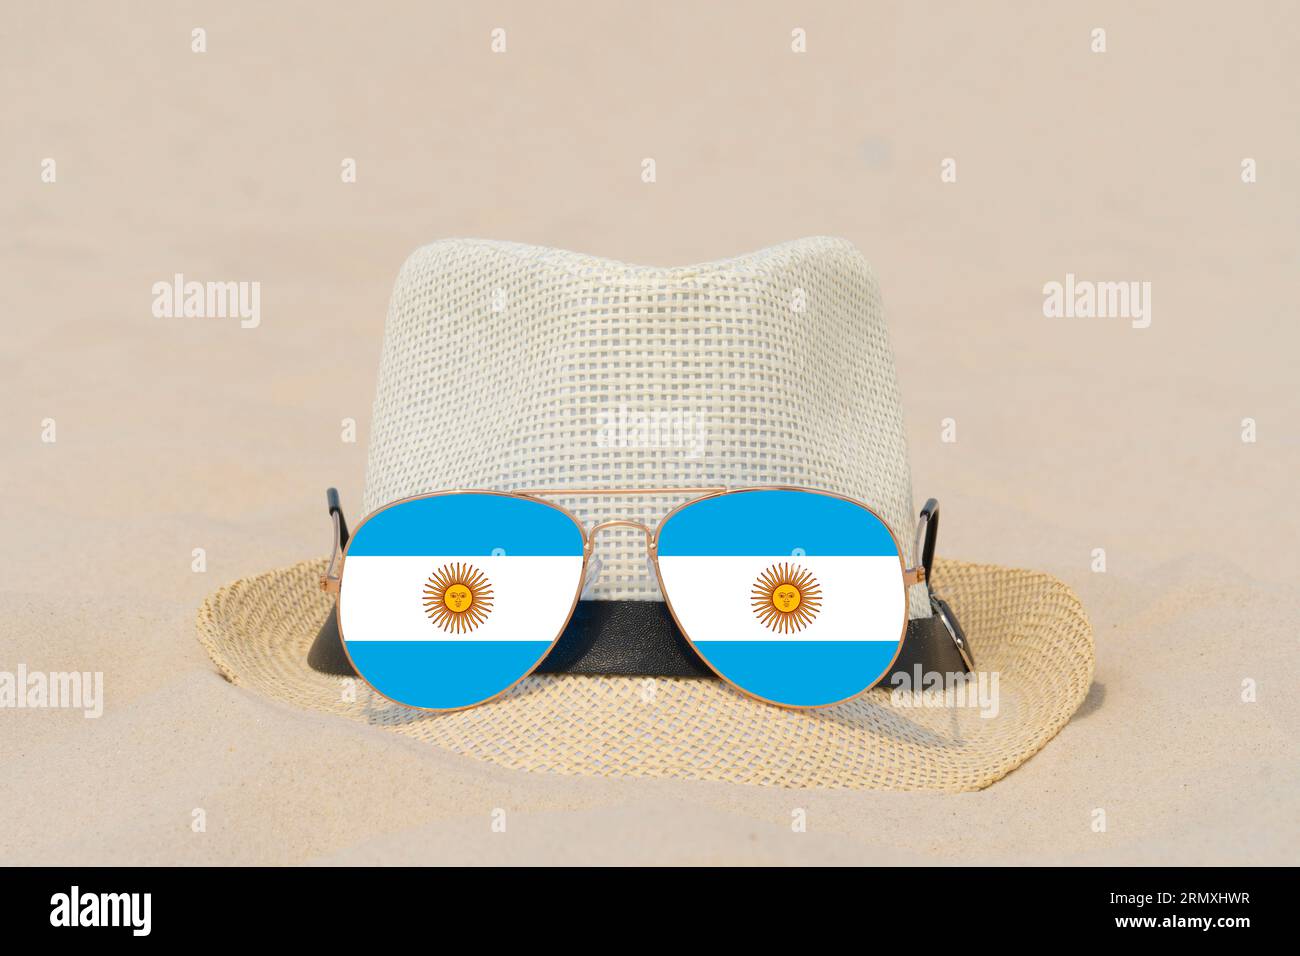 Sonnenbrille mit Brille in Form einer argentinischen Flagge und einem Hut liegen auf Sand. Konzept von Sommerferien und Reisen in Argentinien. Sommerruhe Stockfoto